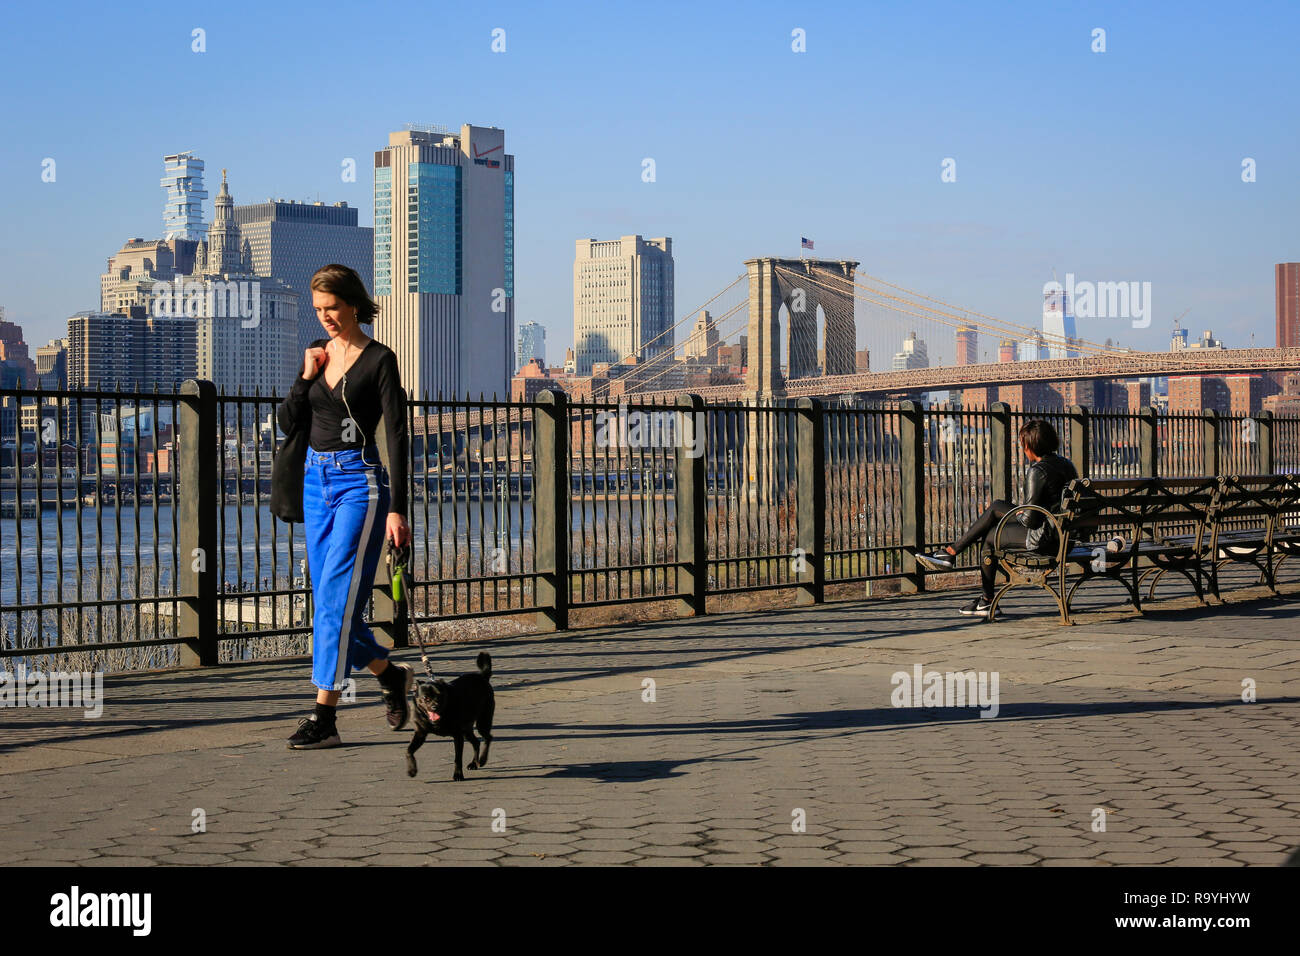 21.02.2018, New York New York, Vereinigte Staaten von Amerika - Menschen auf der Uferpromenade Brooklyn Heights, Blick Richtung Manhattan skylin Foto Stock